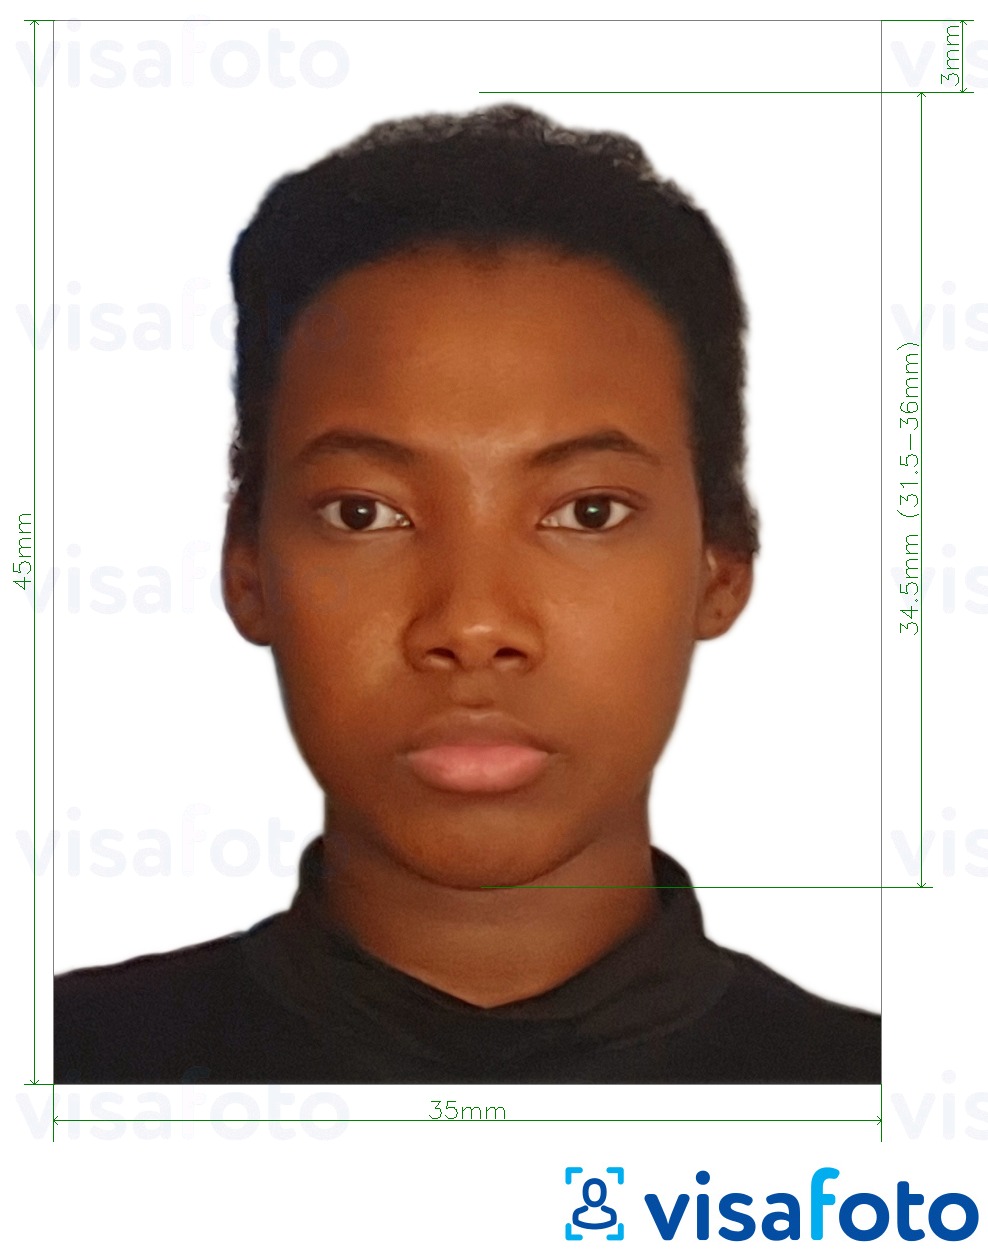 정확한 사이즈 크기의 가이아나 여권 45x35 mm (1.77 x 1.38 인치) 사진의 예